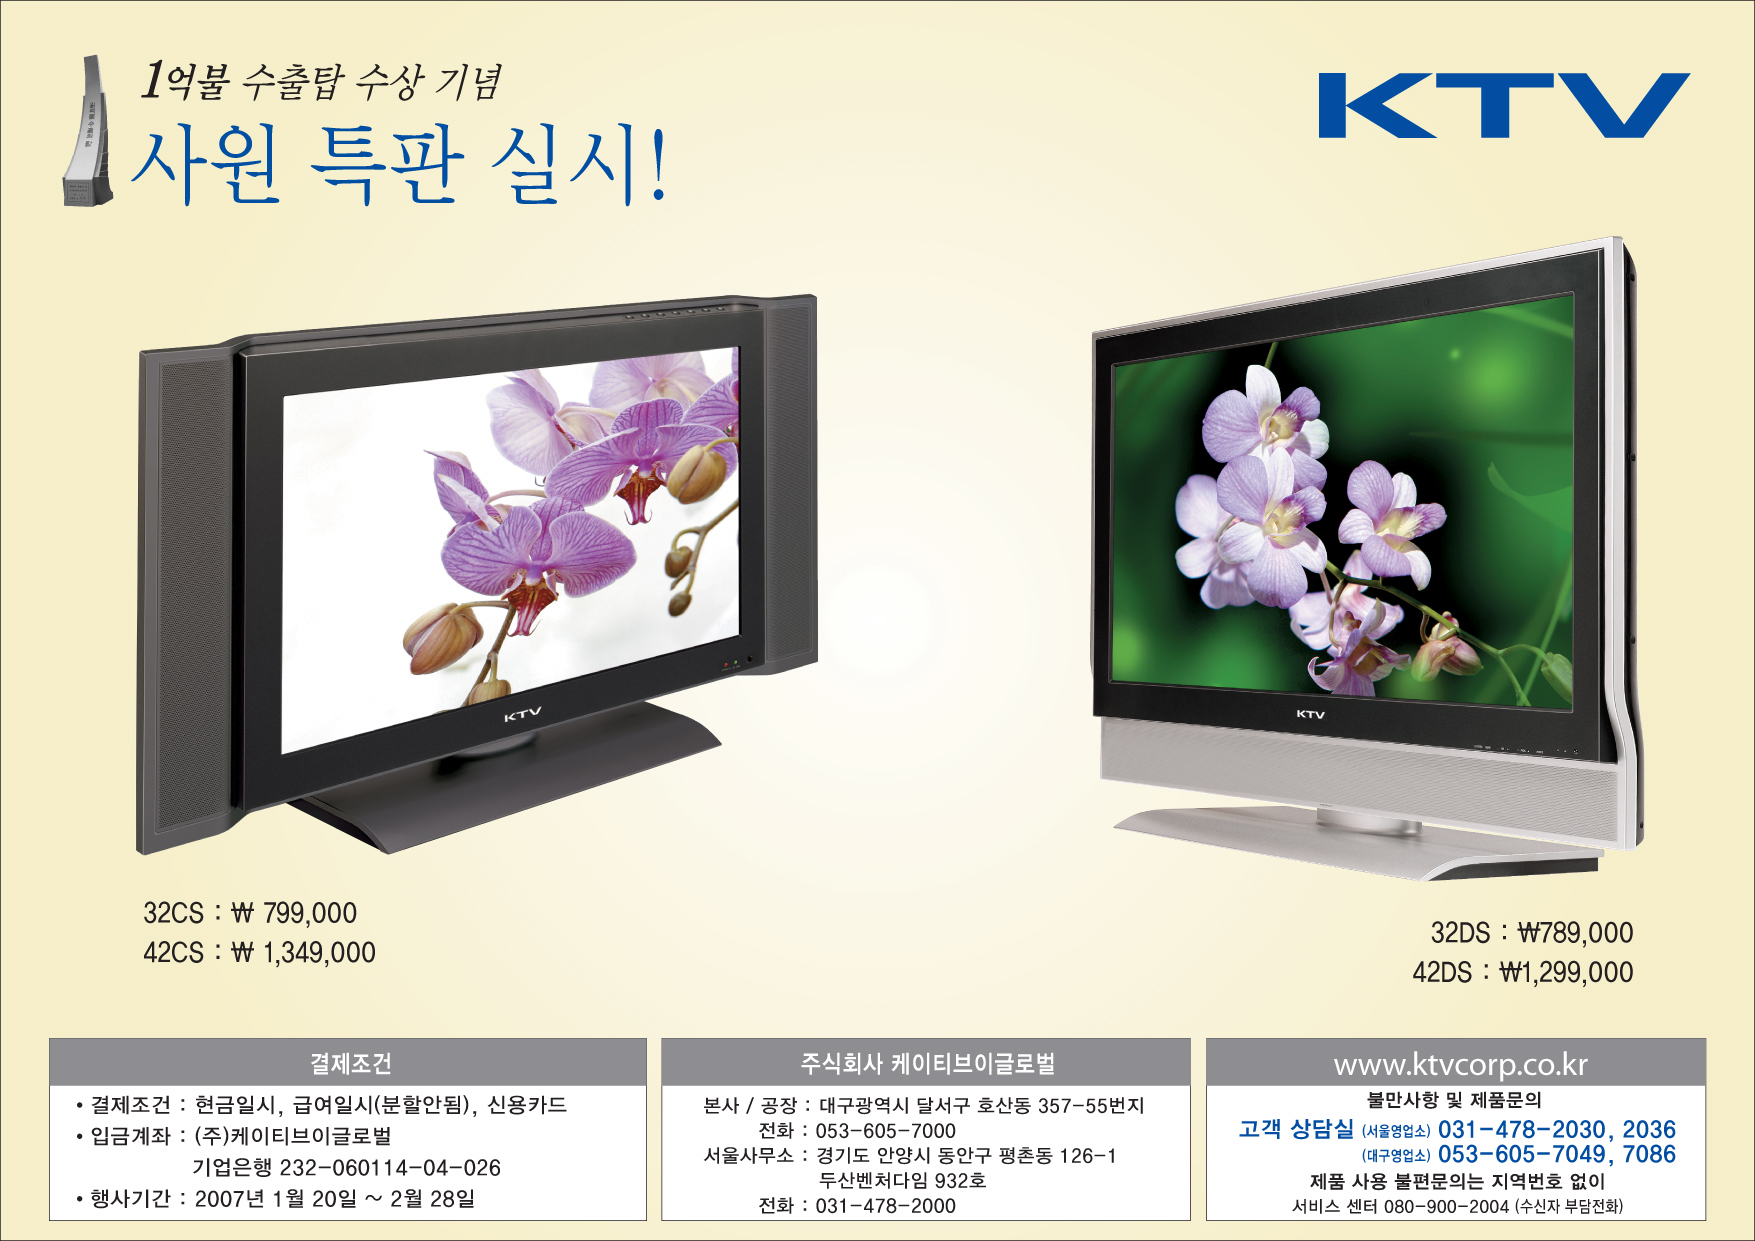 경일가족대상 LCD TV 특가판매 행사 이미지